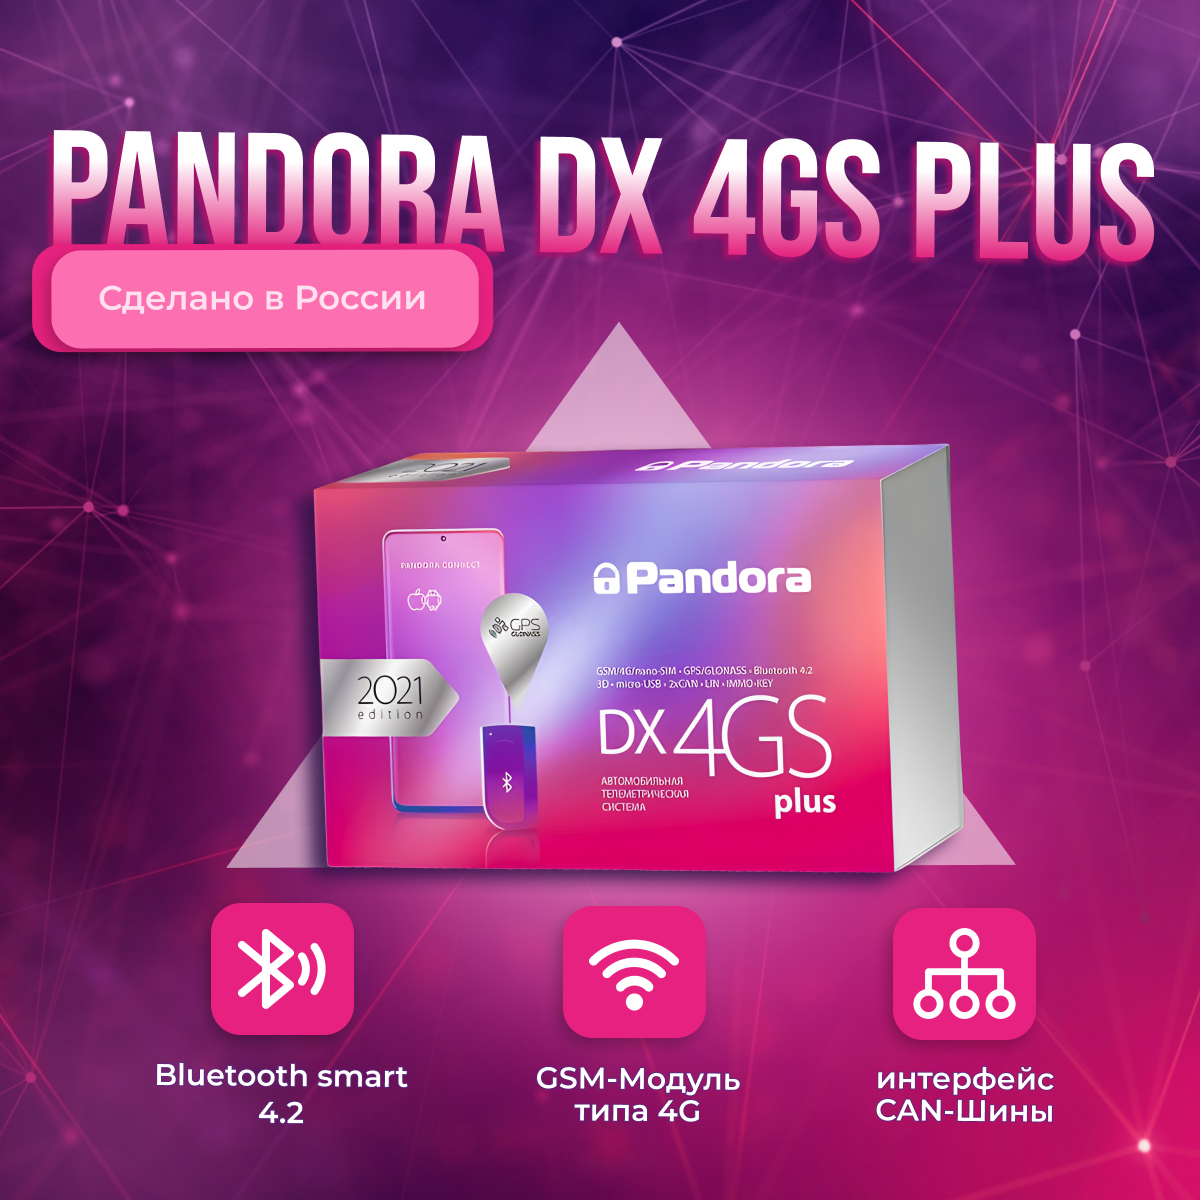 Телеметрическая охранно-сервисная система Pandora DX 4GS Plus